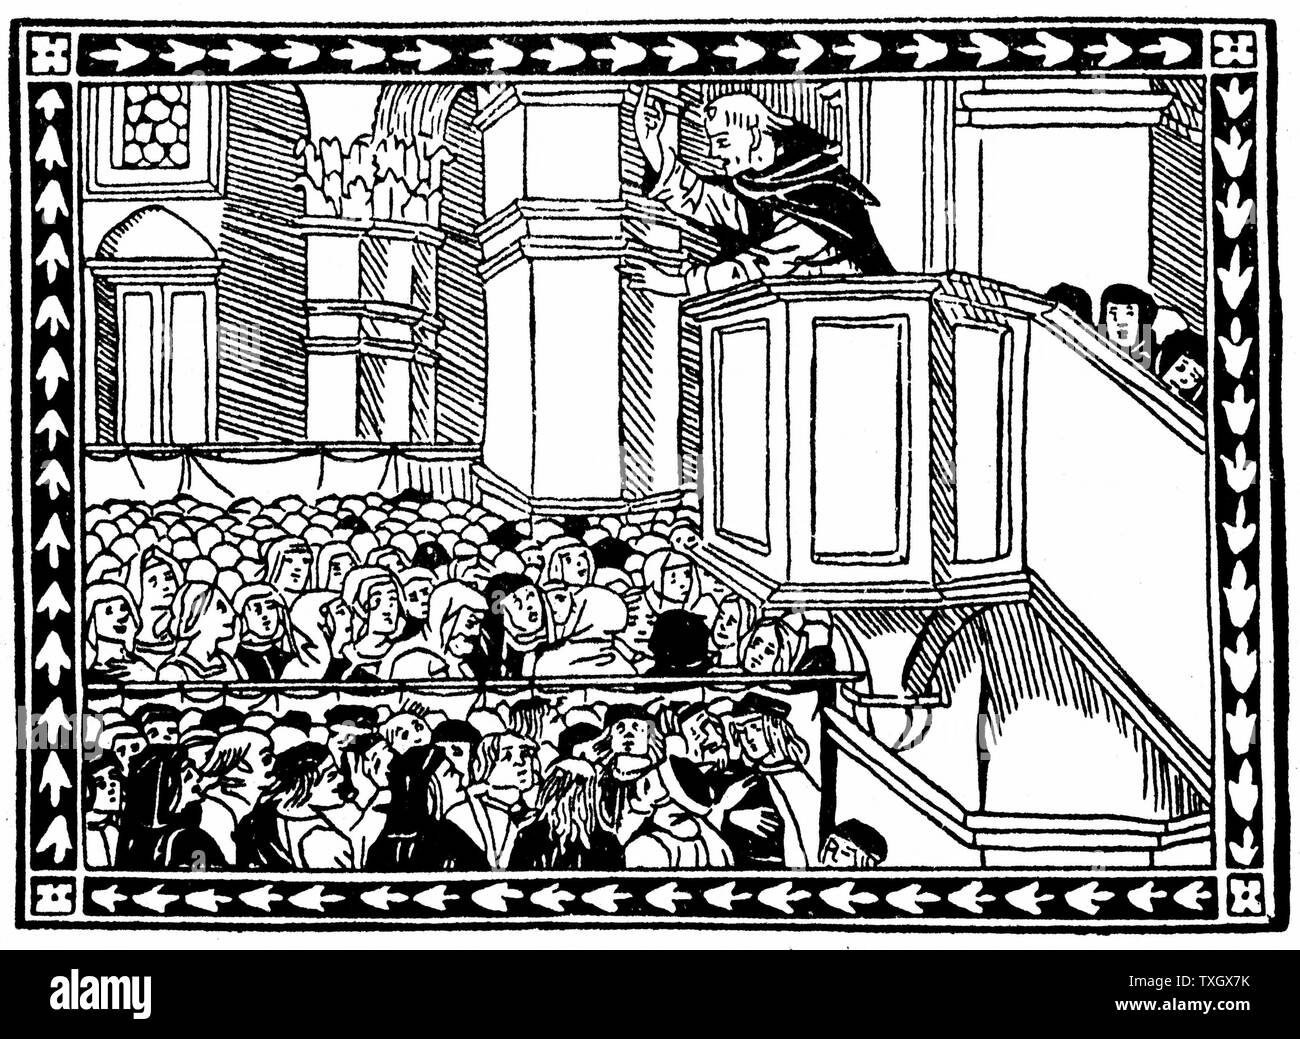 Girolamo Savonarola (1452-1498), italienische politische und religiöse Reformer, in Florenz zu predigen. Seine Anhänger in Florenz eine "Scheiterhaufen der Eitelkeiten" und er "Rom wird diese Flammen' - 1496 nicht auslöschen. Gefoltert und auf dem Scheiterhaufen verbrannt. Holzschnitt. Stockfoto